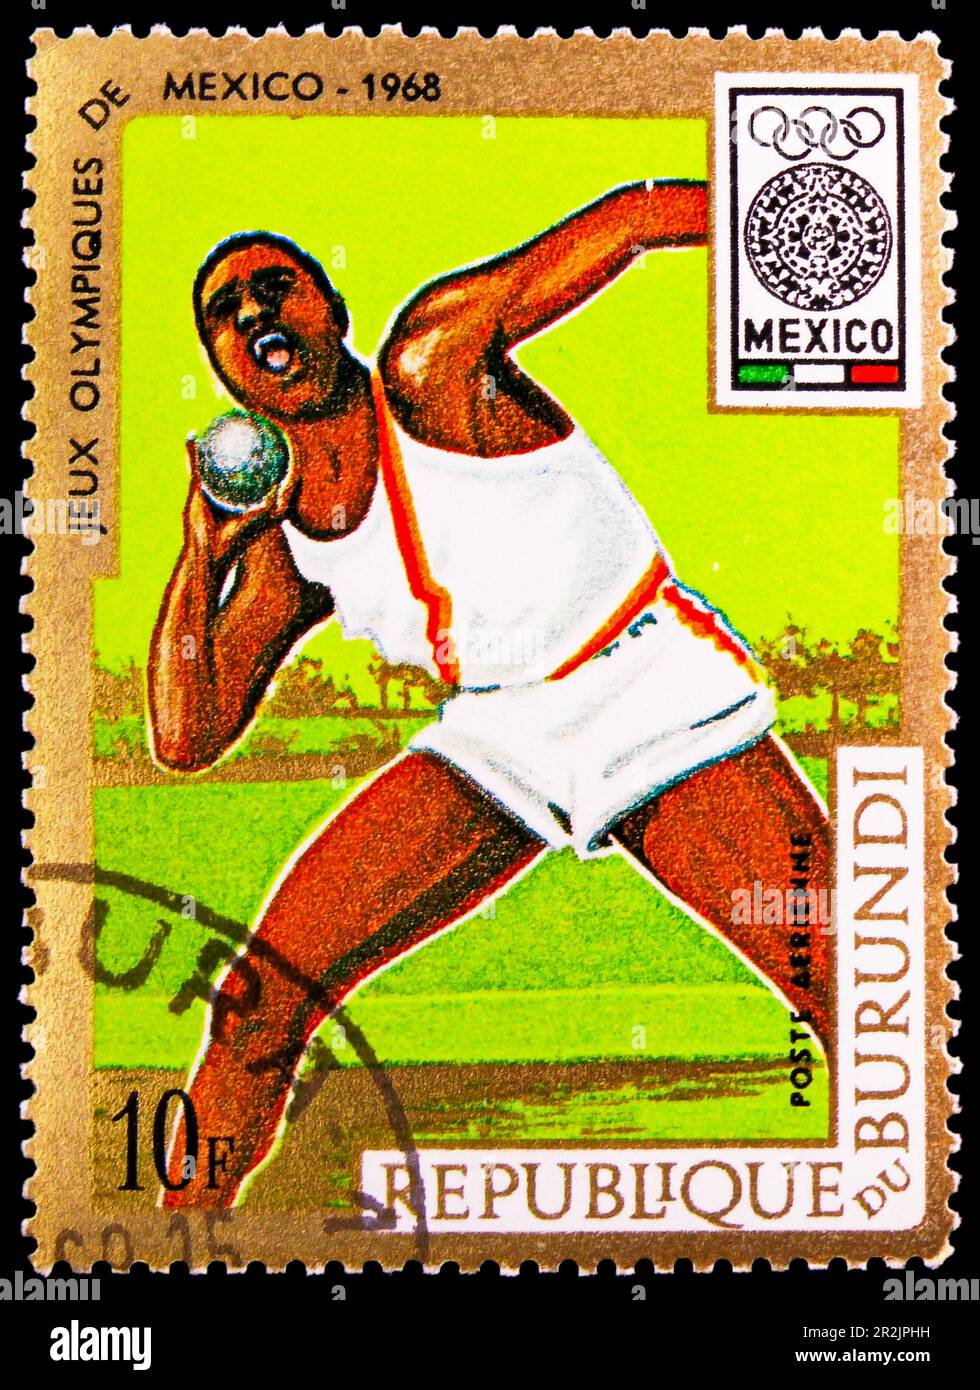 MOSCOU, RUSSIE - 18 MAI 2023 : timbre-poste imprimé au Burundi spectacles Shot put, Jeux Olympiques d'été 1968 - série Mexico, vers 1968 Banque D'Images